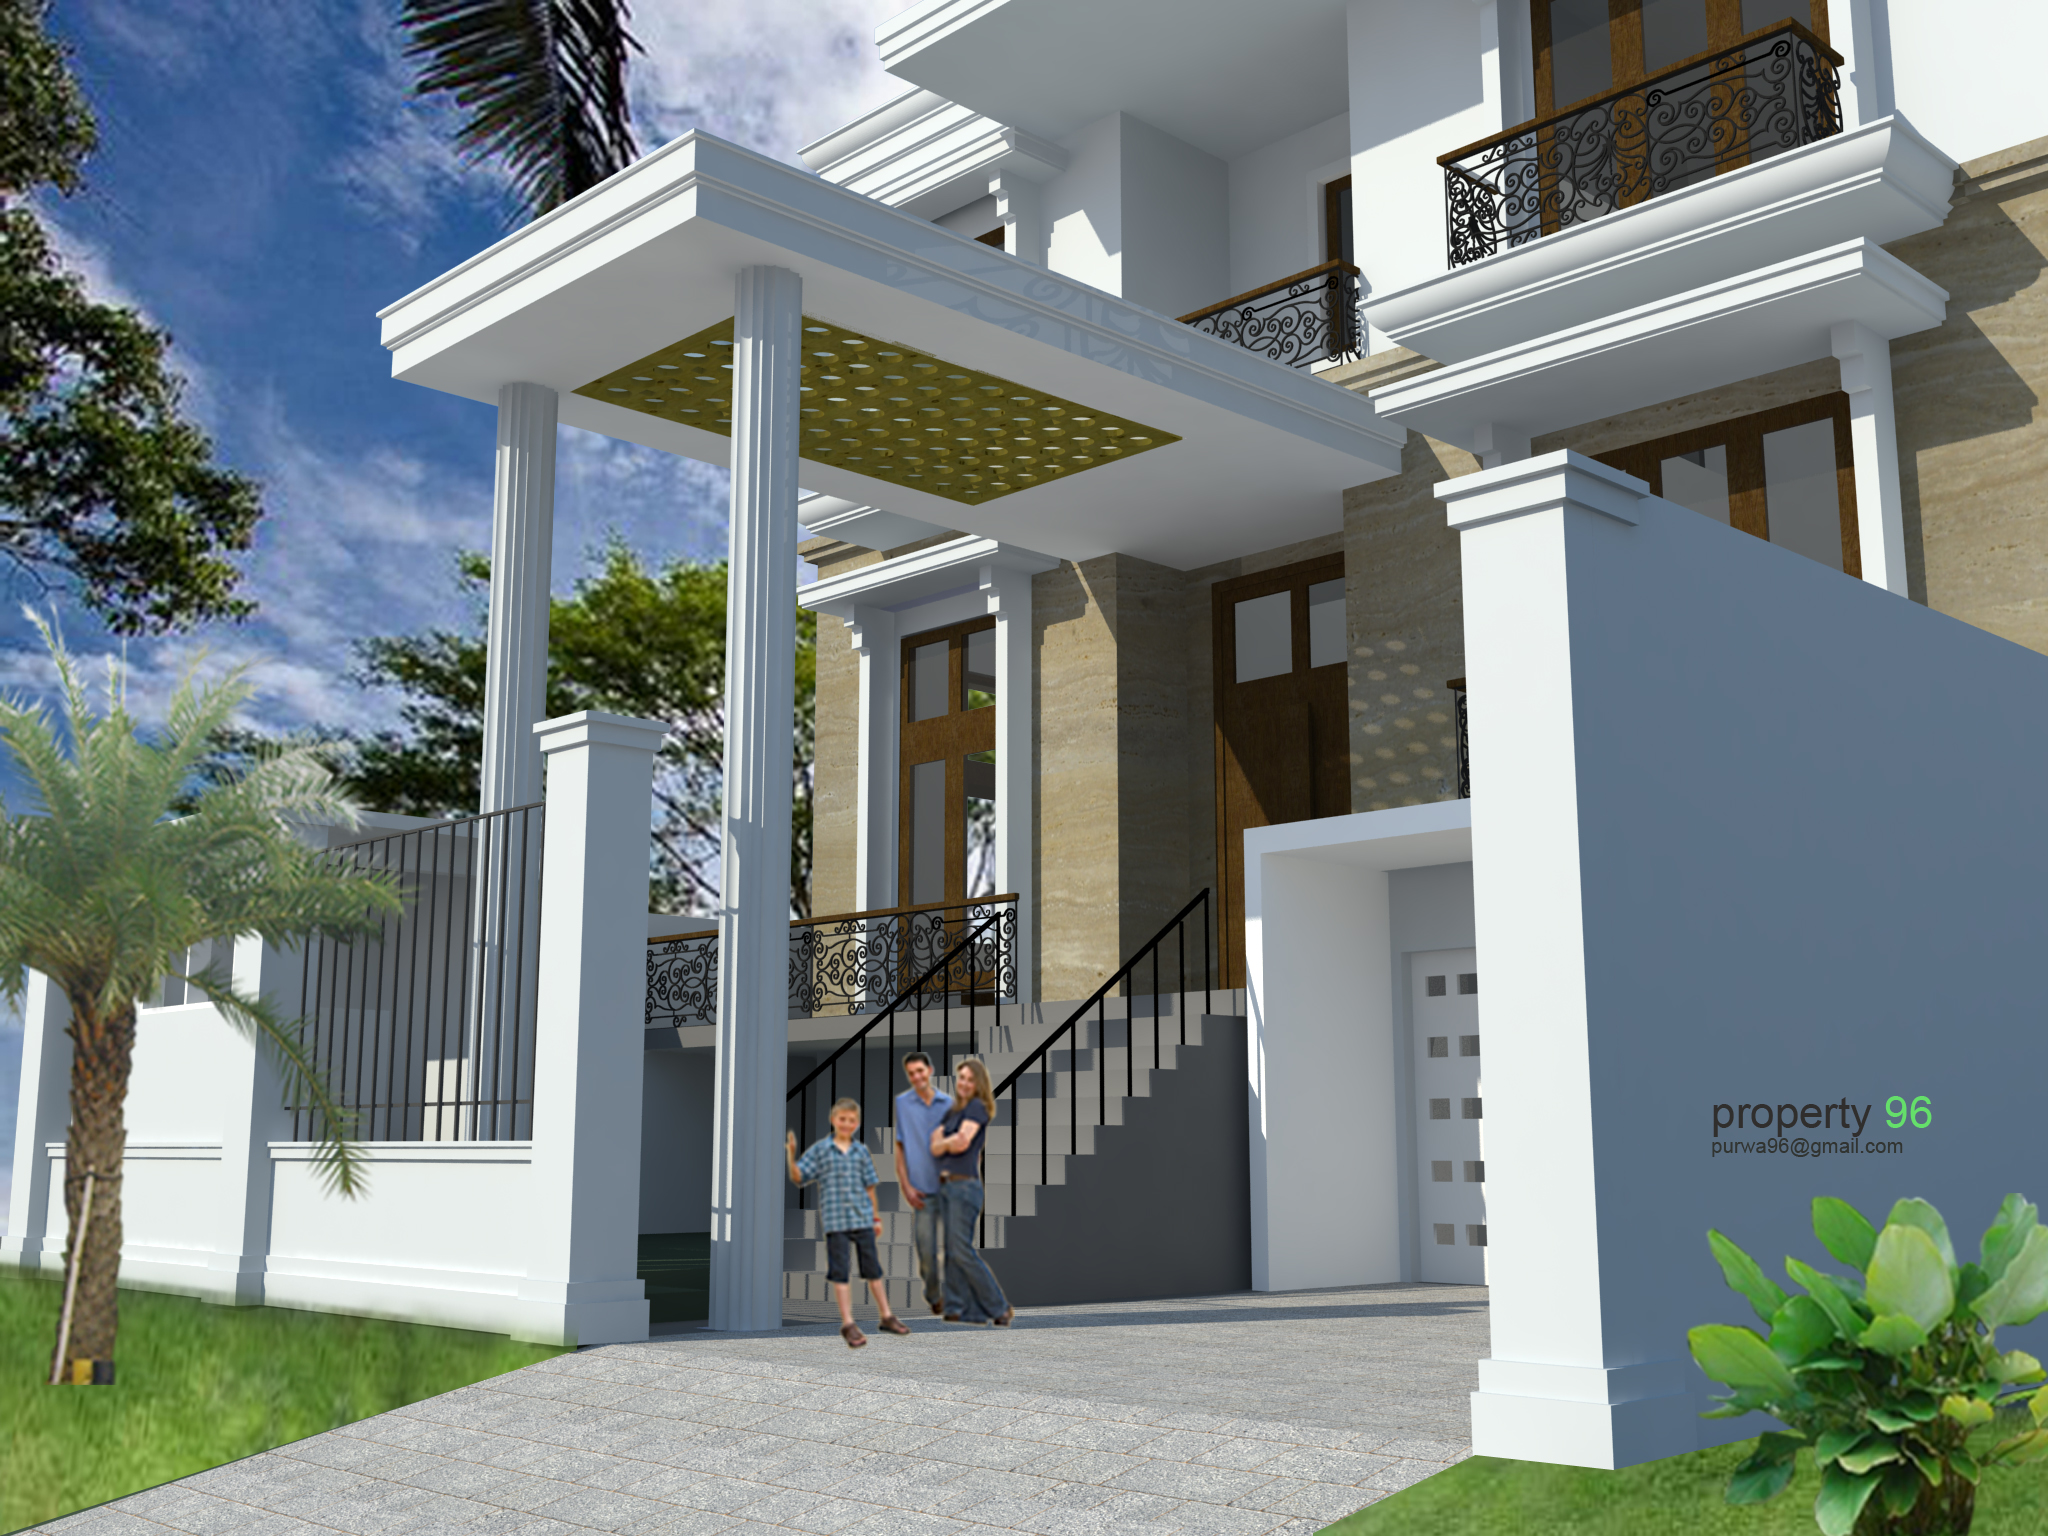 Property 96 Desain Rumah Dan Bangun Rumah Bagus Dengan Konsep